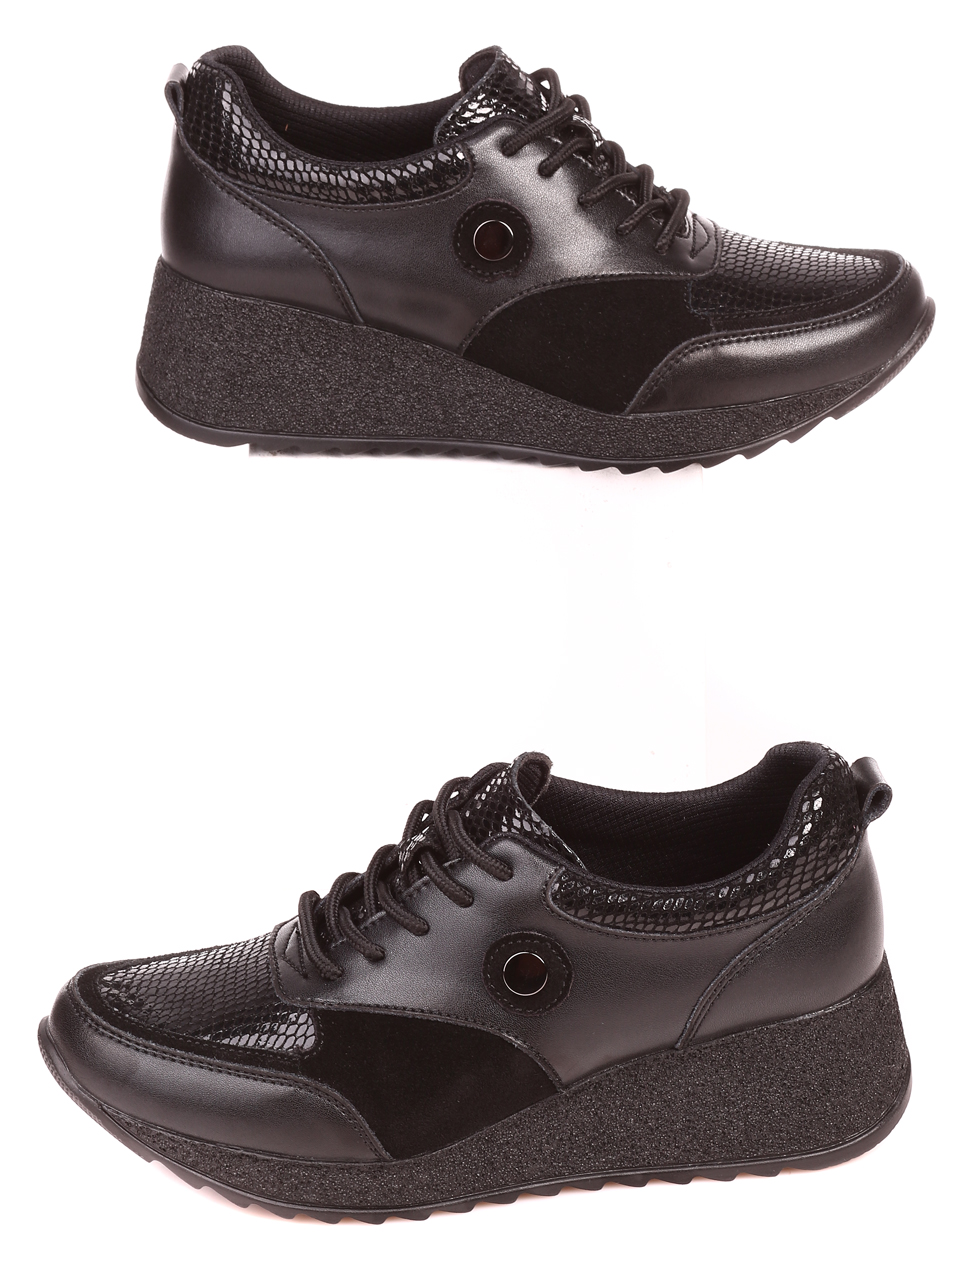 Ежедневни дамски обувки от естествена кожа в черно 3AF-21577 black 